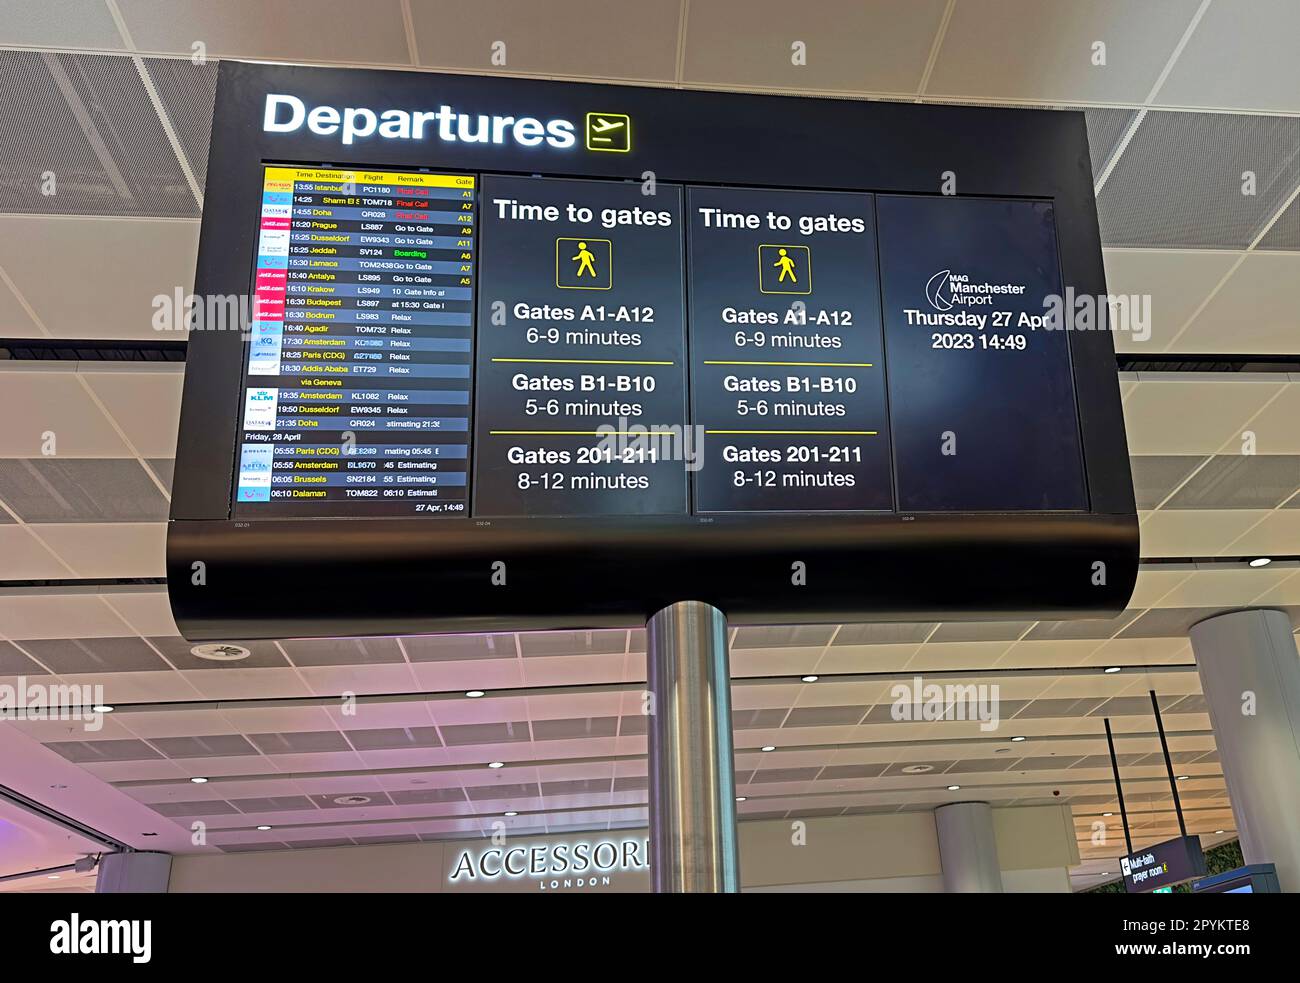 Affichage des départs de l'aéroport, dans la zone des portes, aéroport international de Manchester, Angleterre, Royaume-Uni, M90 1QX - WiFi gratuit Banque D'Images